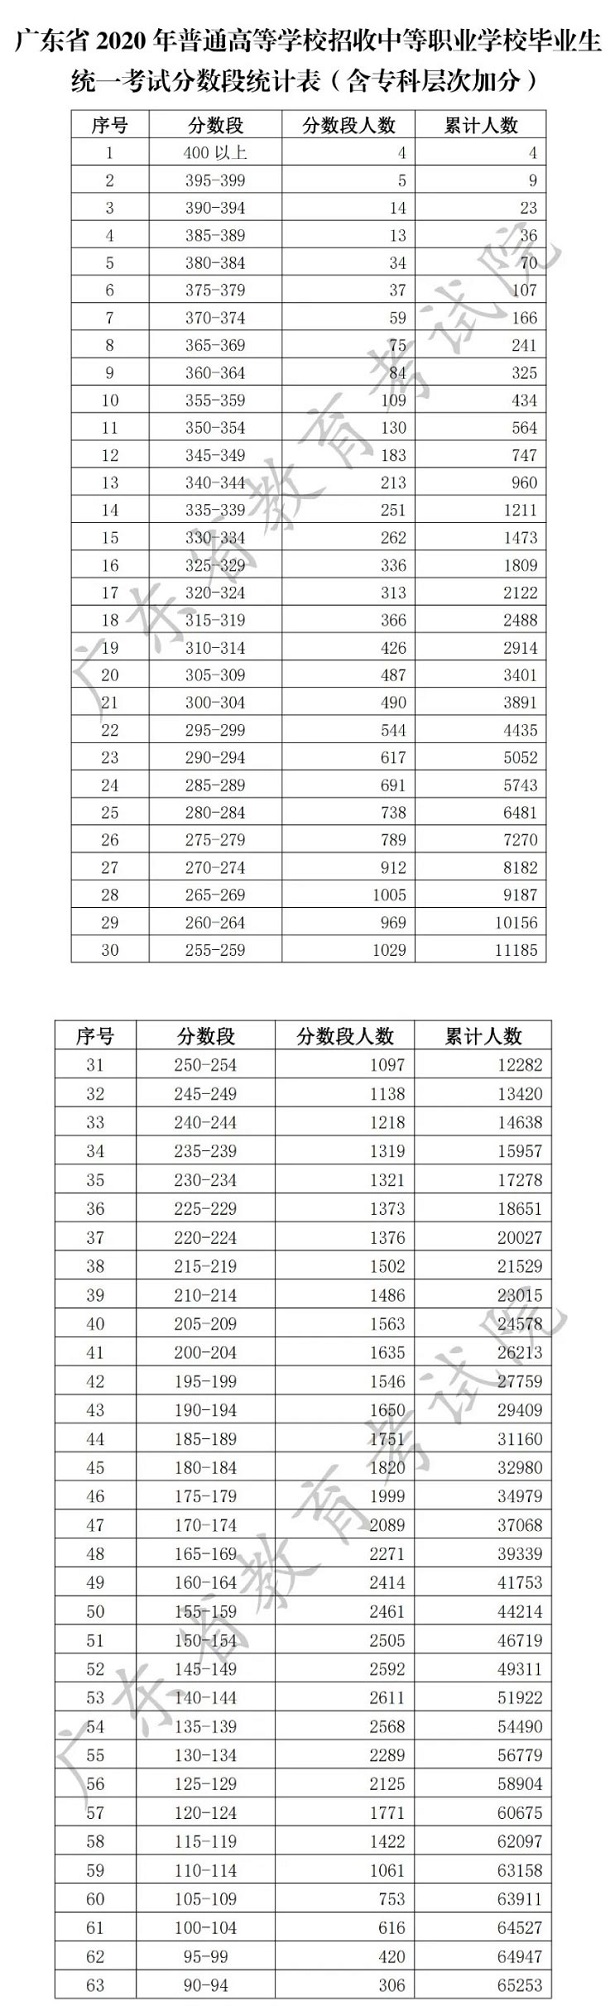 2020年广东春季高考中职分数段统计表